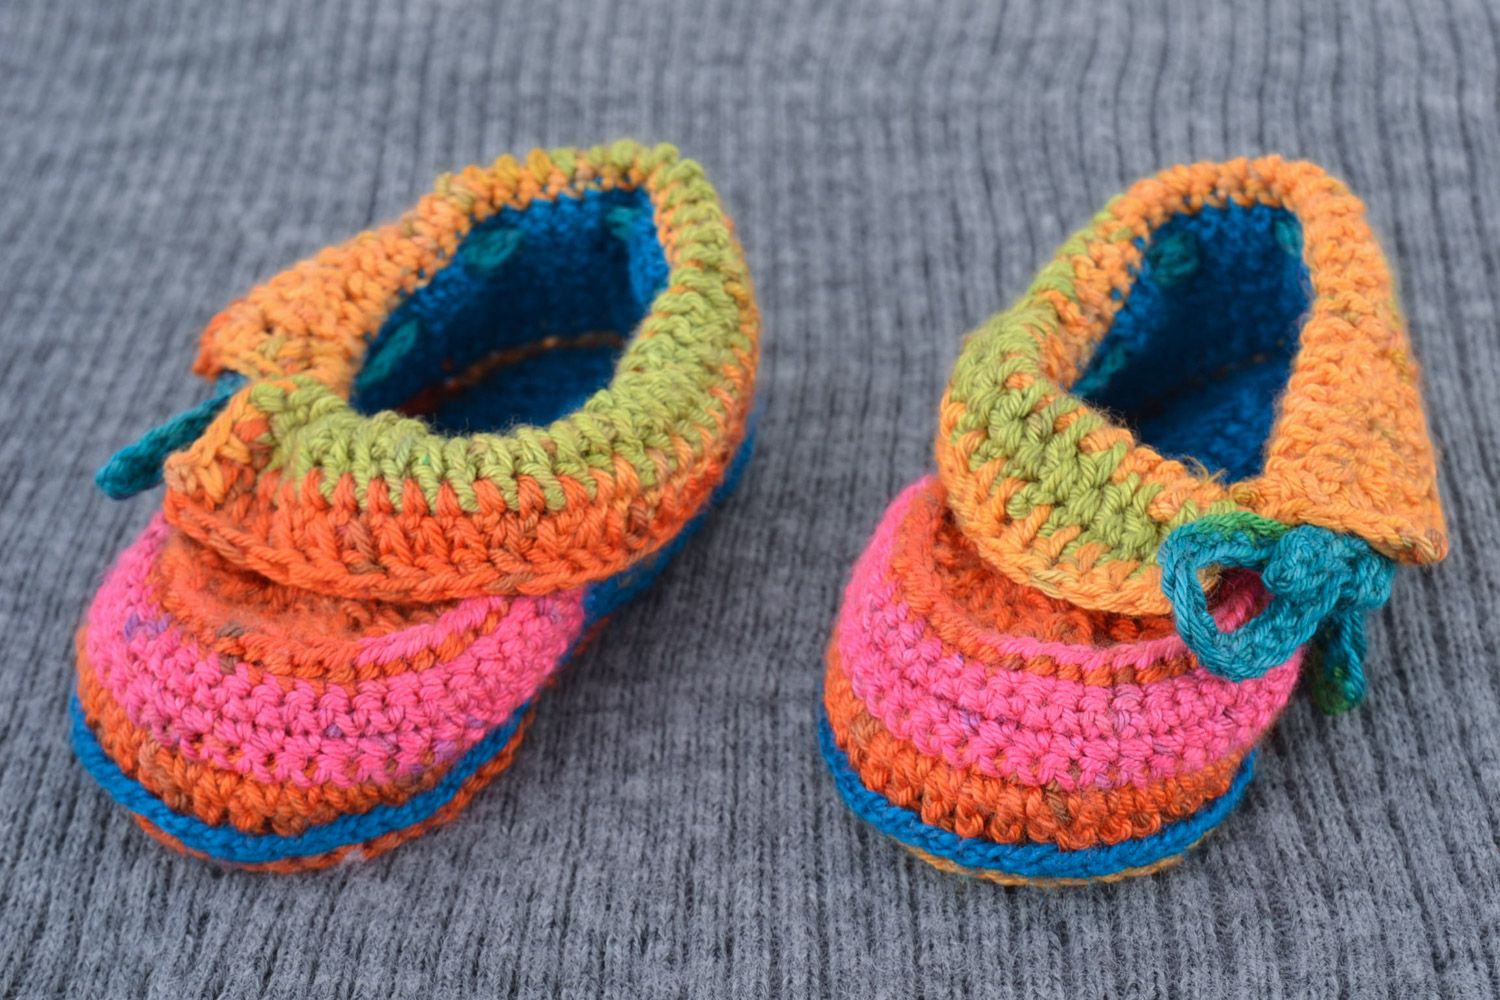 Яркие маленькие вязаные туфельки крючком из шерсти ручной работы для ребенка фото 1